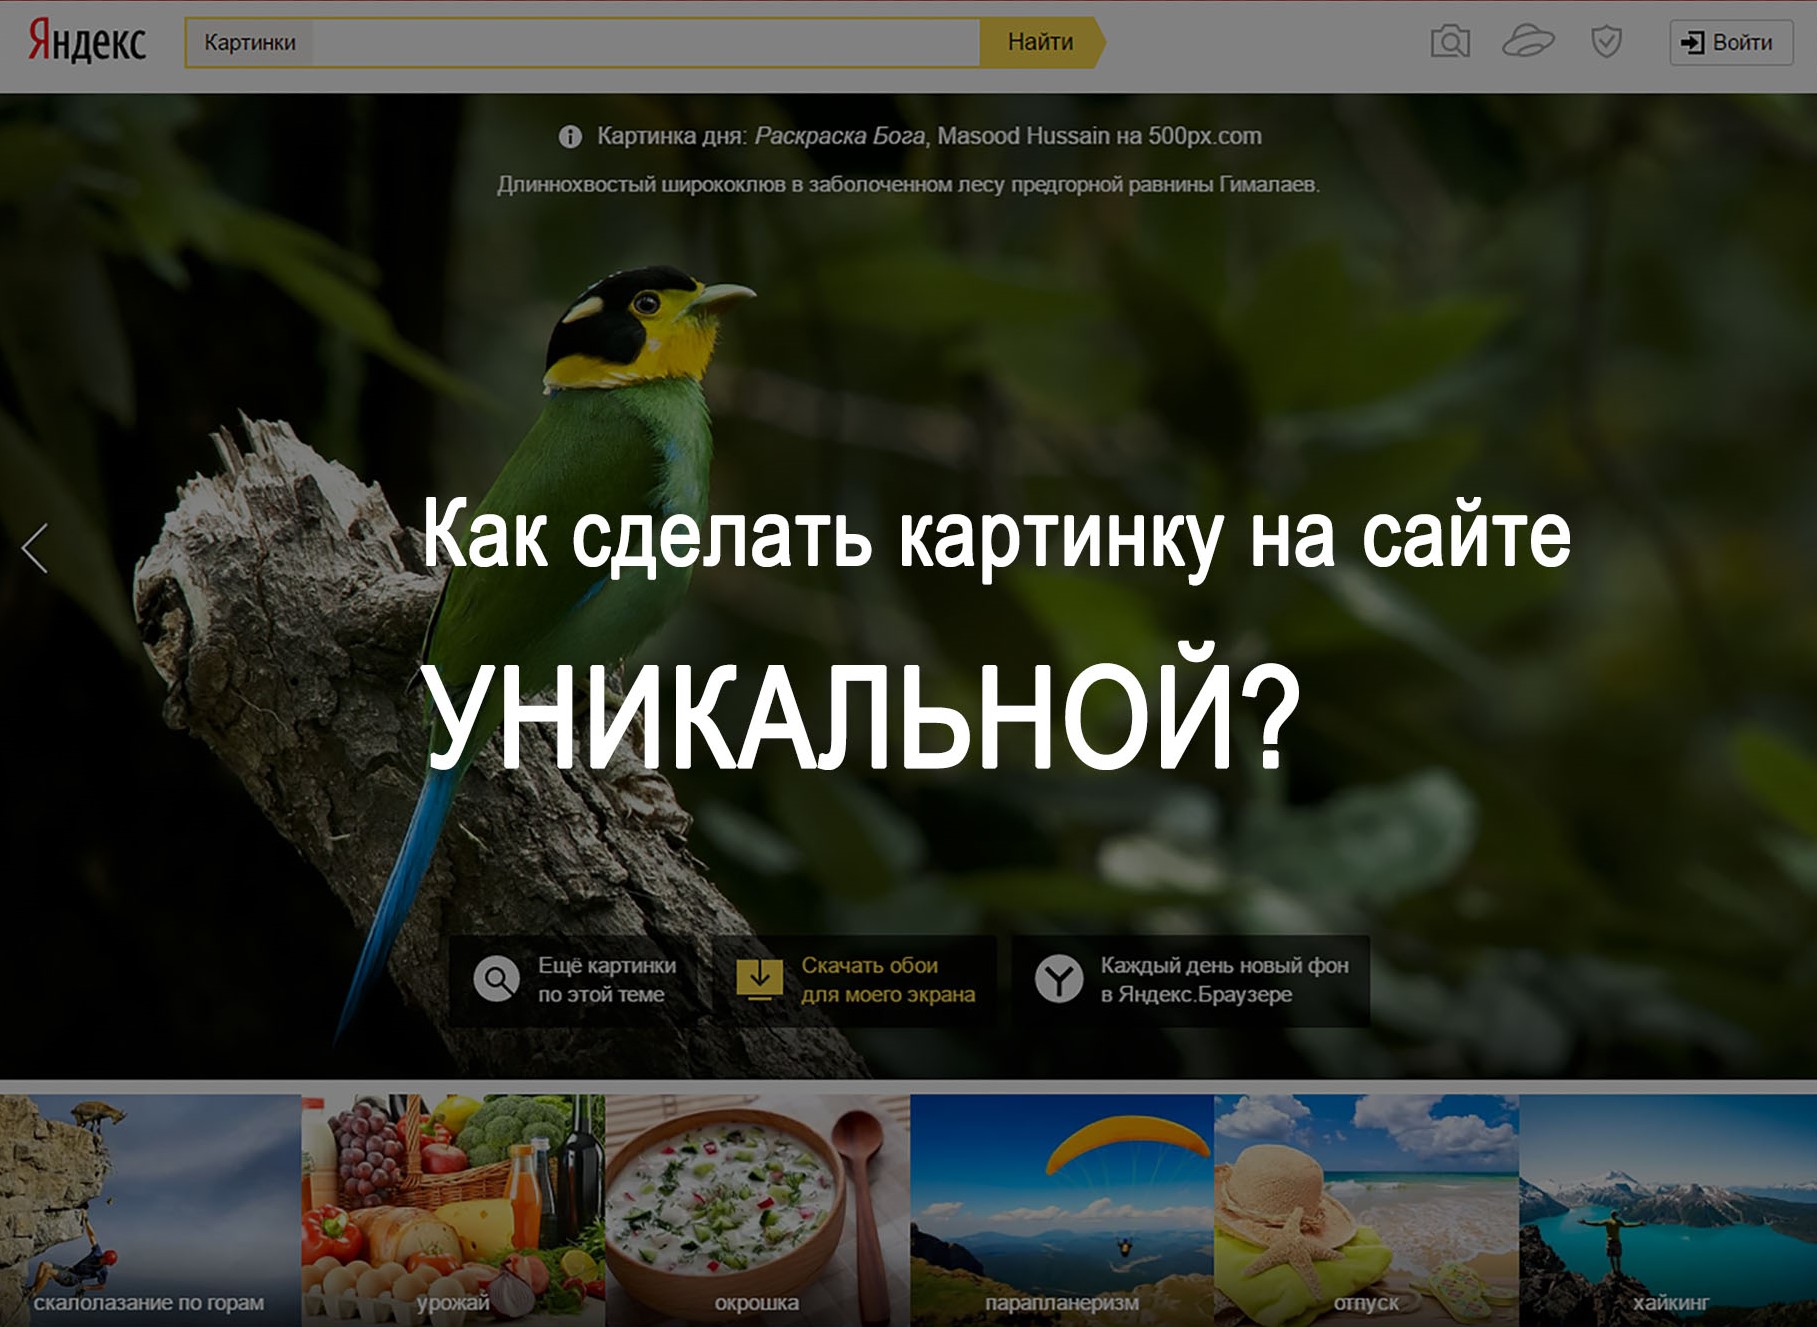 Сделать сайт уникальным. Как сделать картинку уникальной для Яндекса. Как сделать фото уникальным для Яндекса. Как сделать изображение уникальным. Как сделать картинку уникальной для поисковиков.